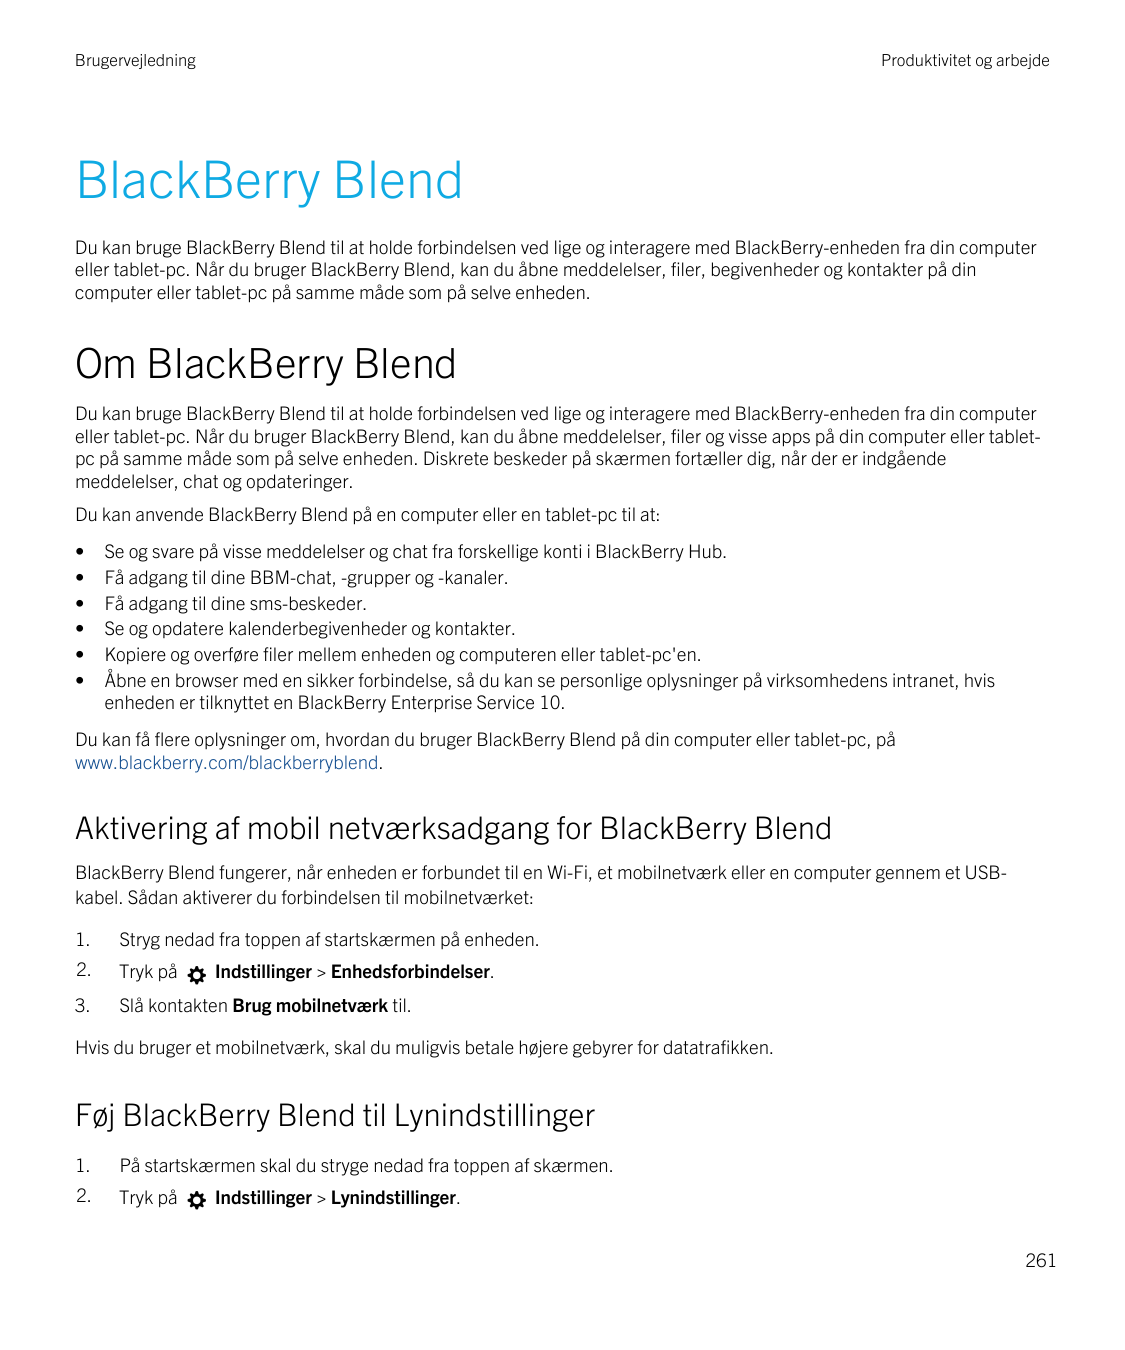 BrugervejledningProduktivitet og arbejdeBlackBerry BlendDu kan bruge BlackBerry Blend til at holde forbindelsen ved lige og inte